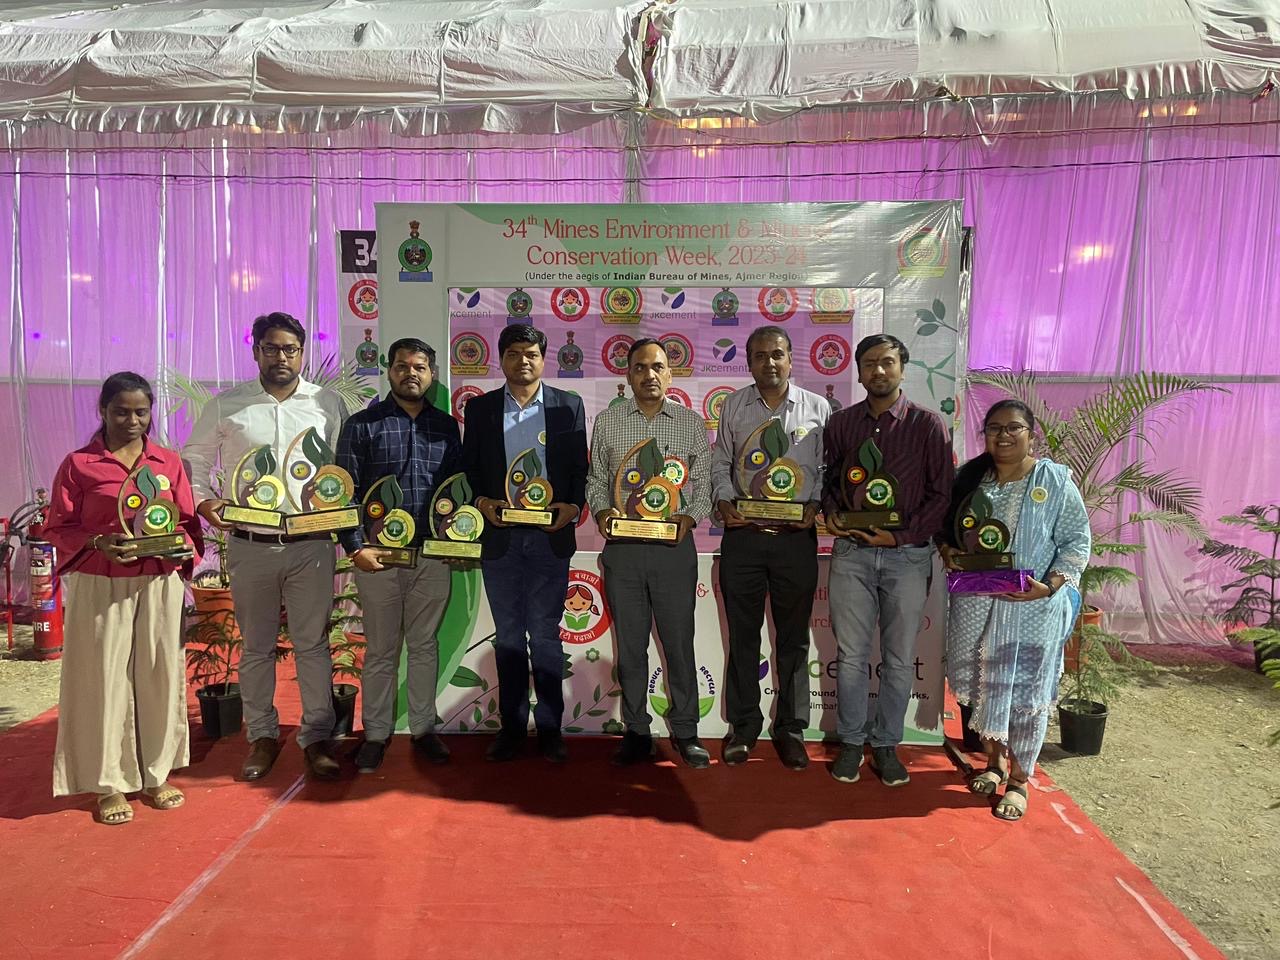 हिंदुस्तान जिंक की 8 माइंस को 34वें खान पर्यावरण एवं खनिज संरक्षण सप्ताह में 24 पुरस्कार